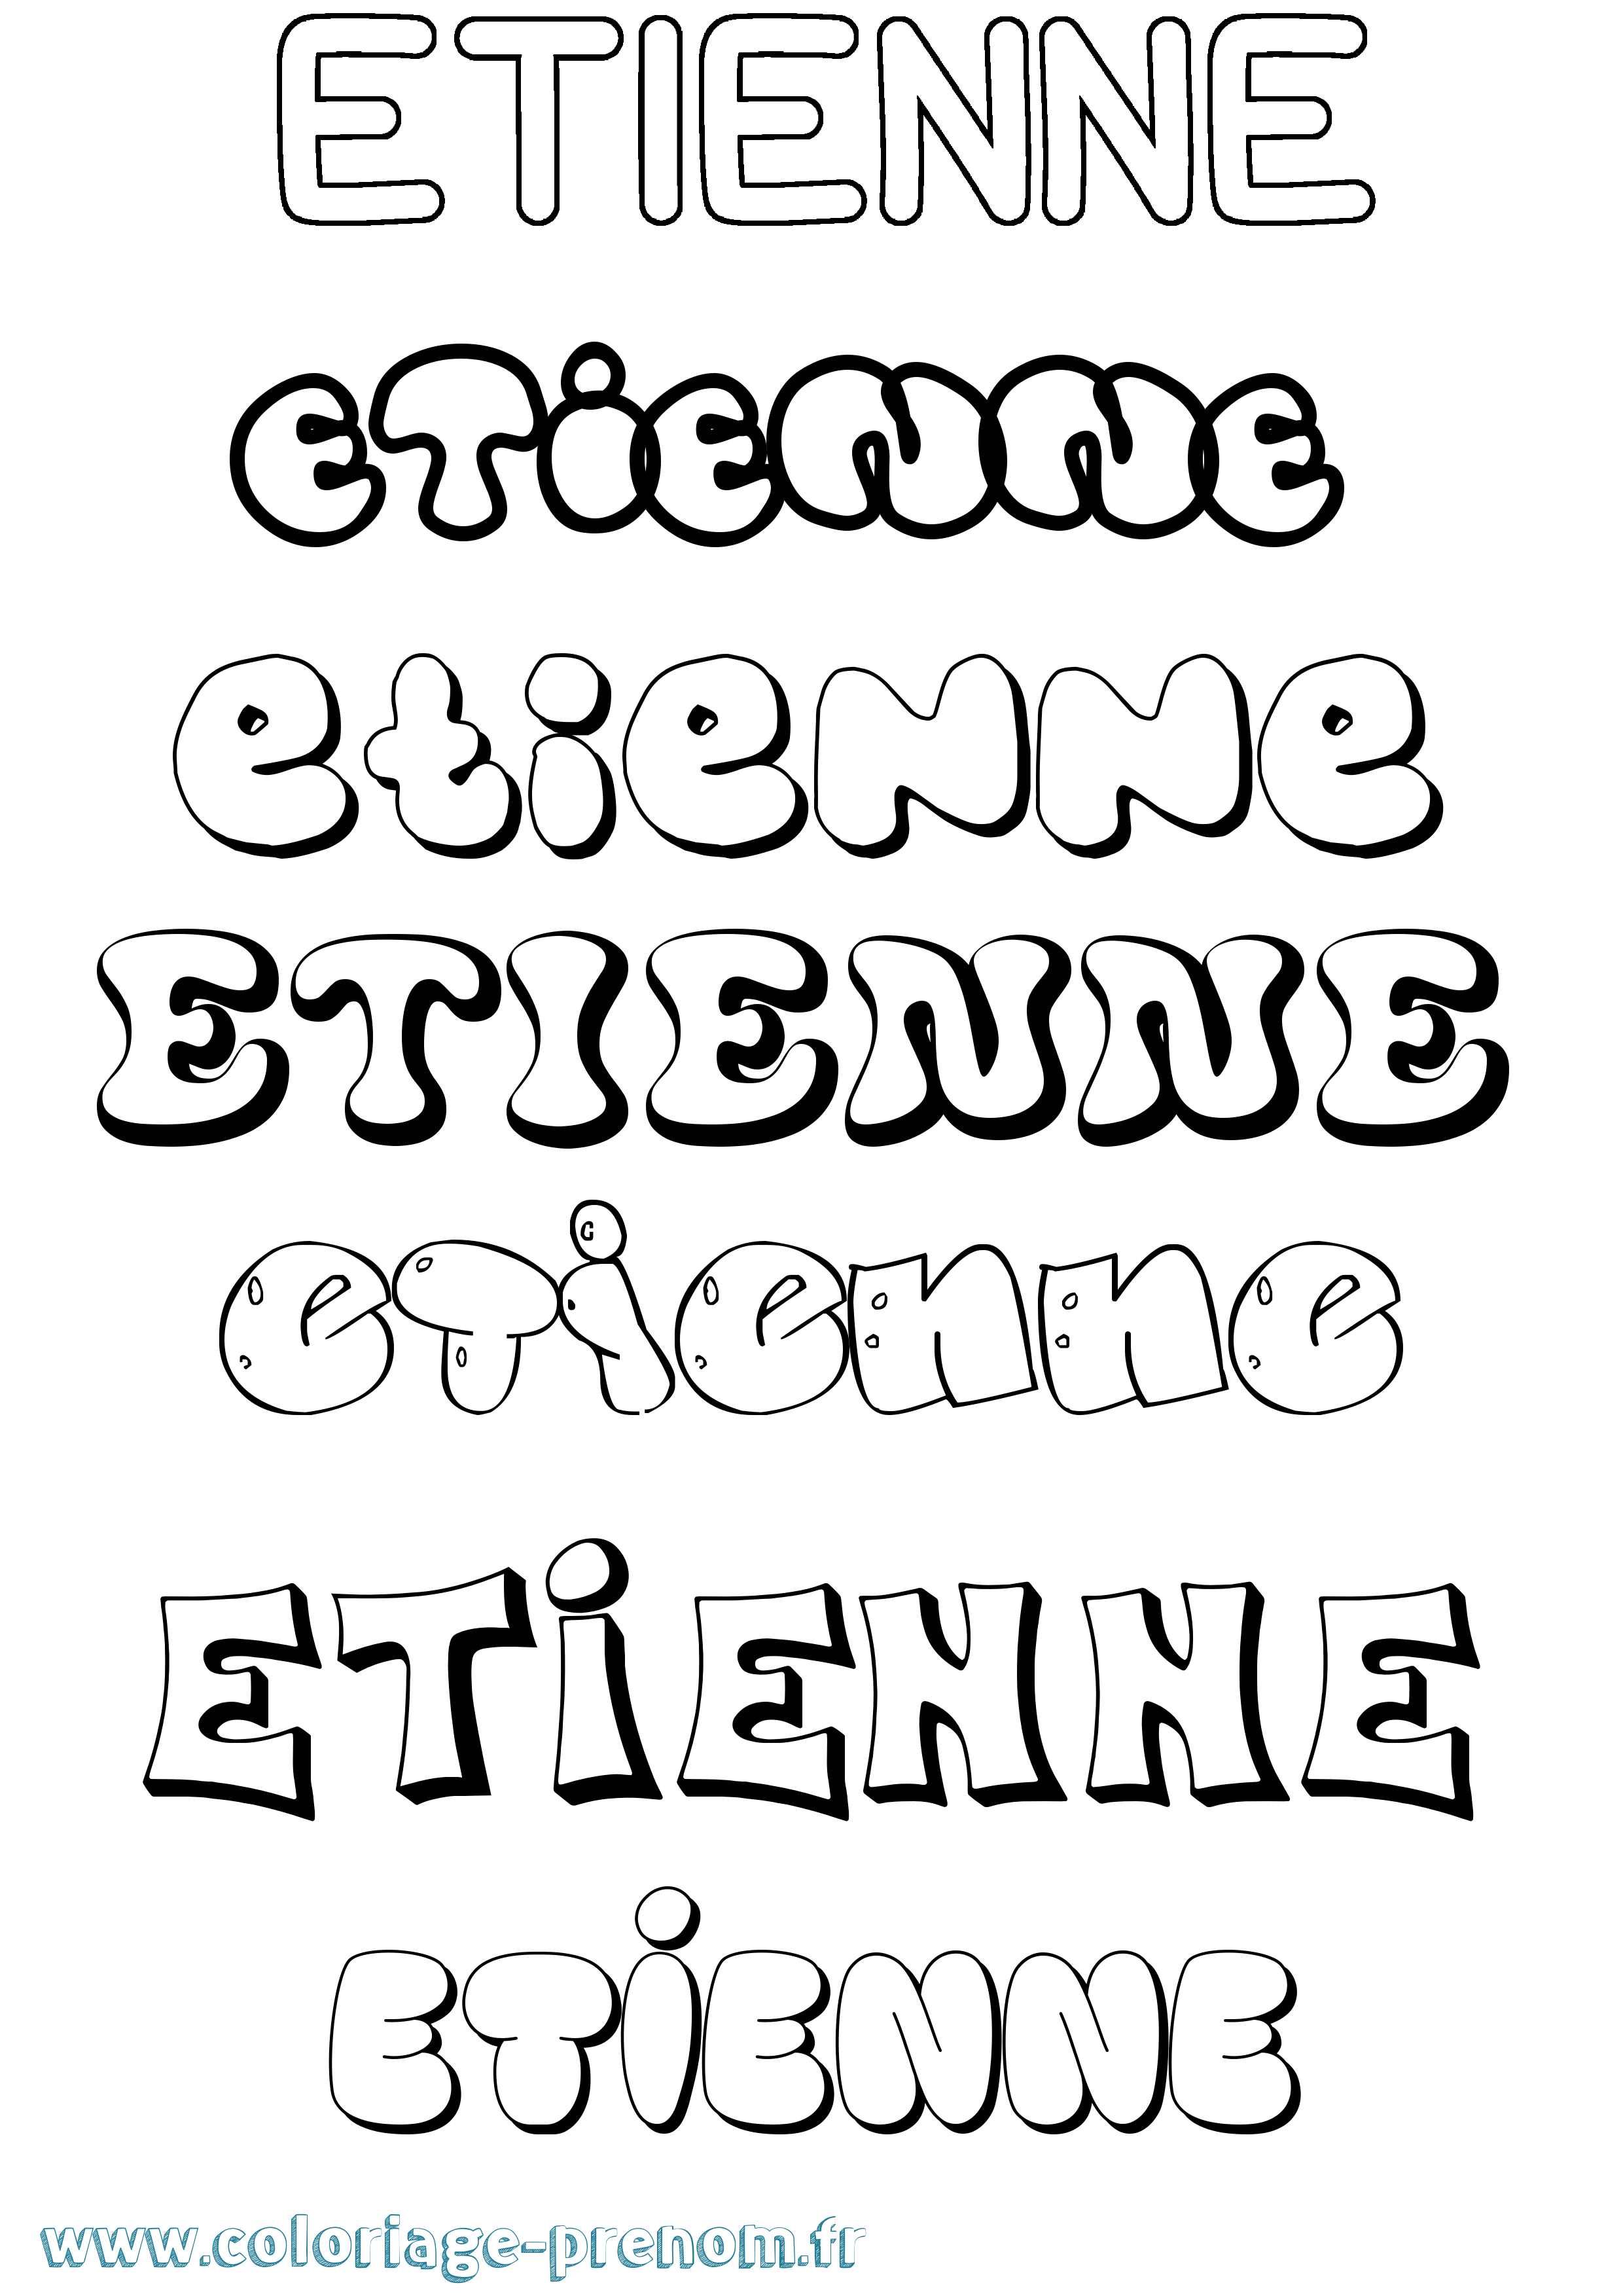 Coloriage prénom Etienne Bubble